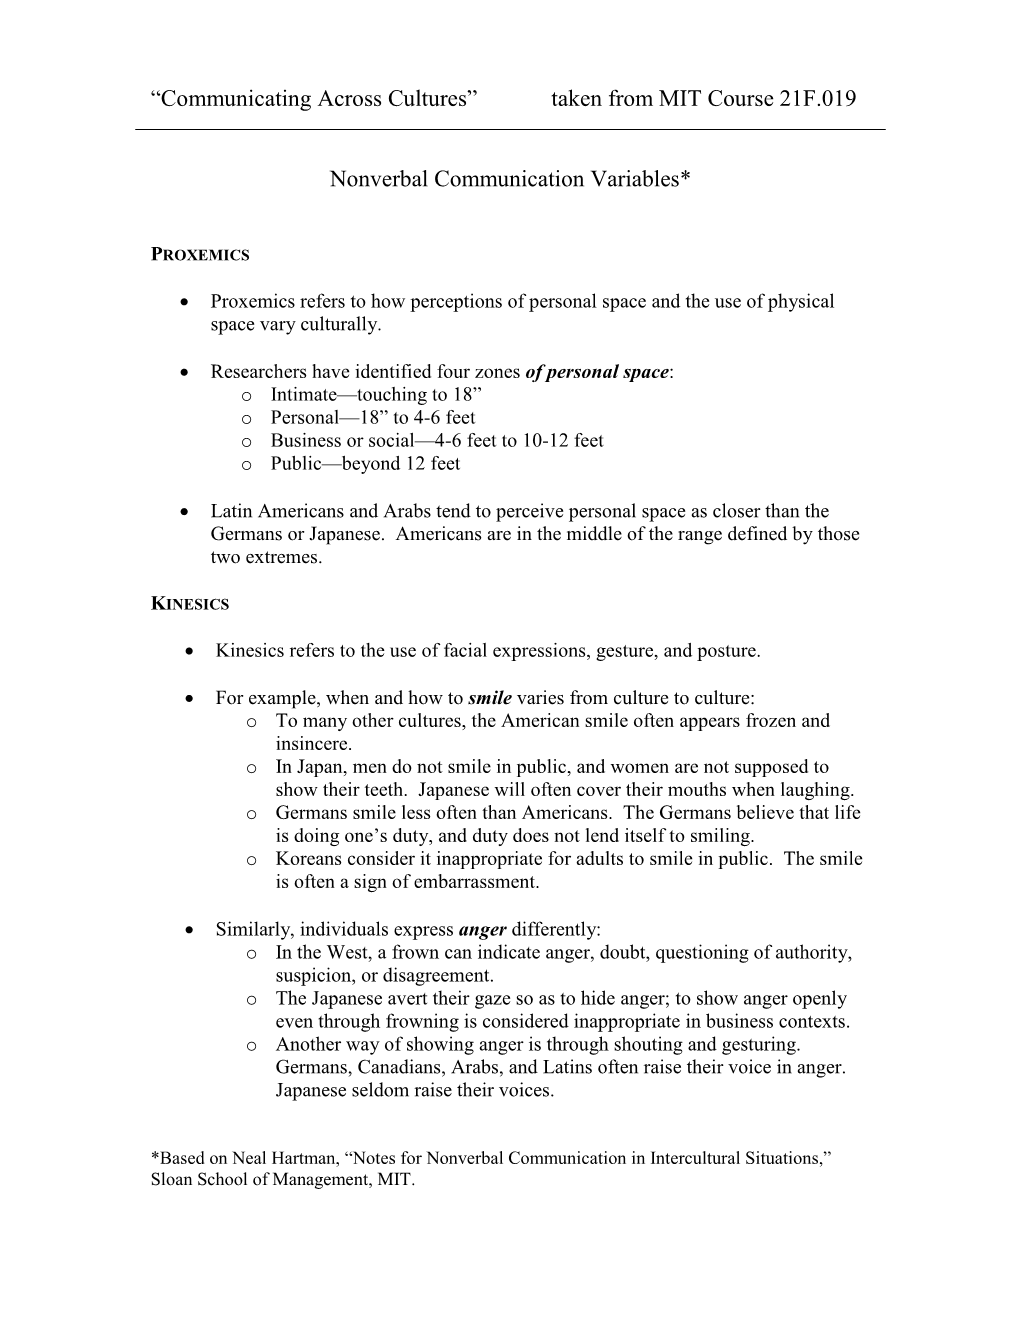 Nonverbal Communication Variables*